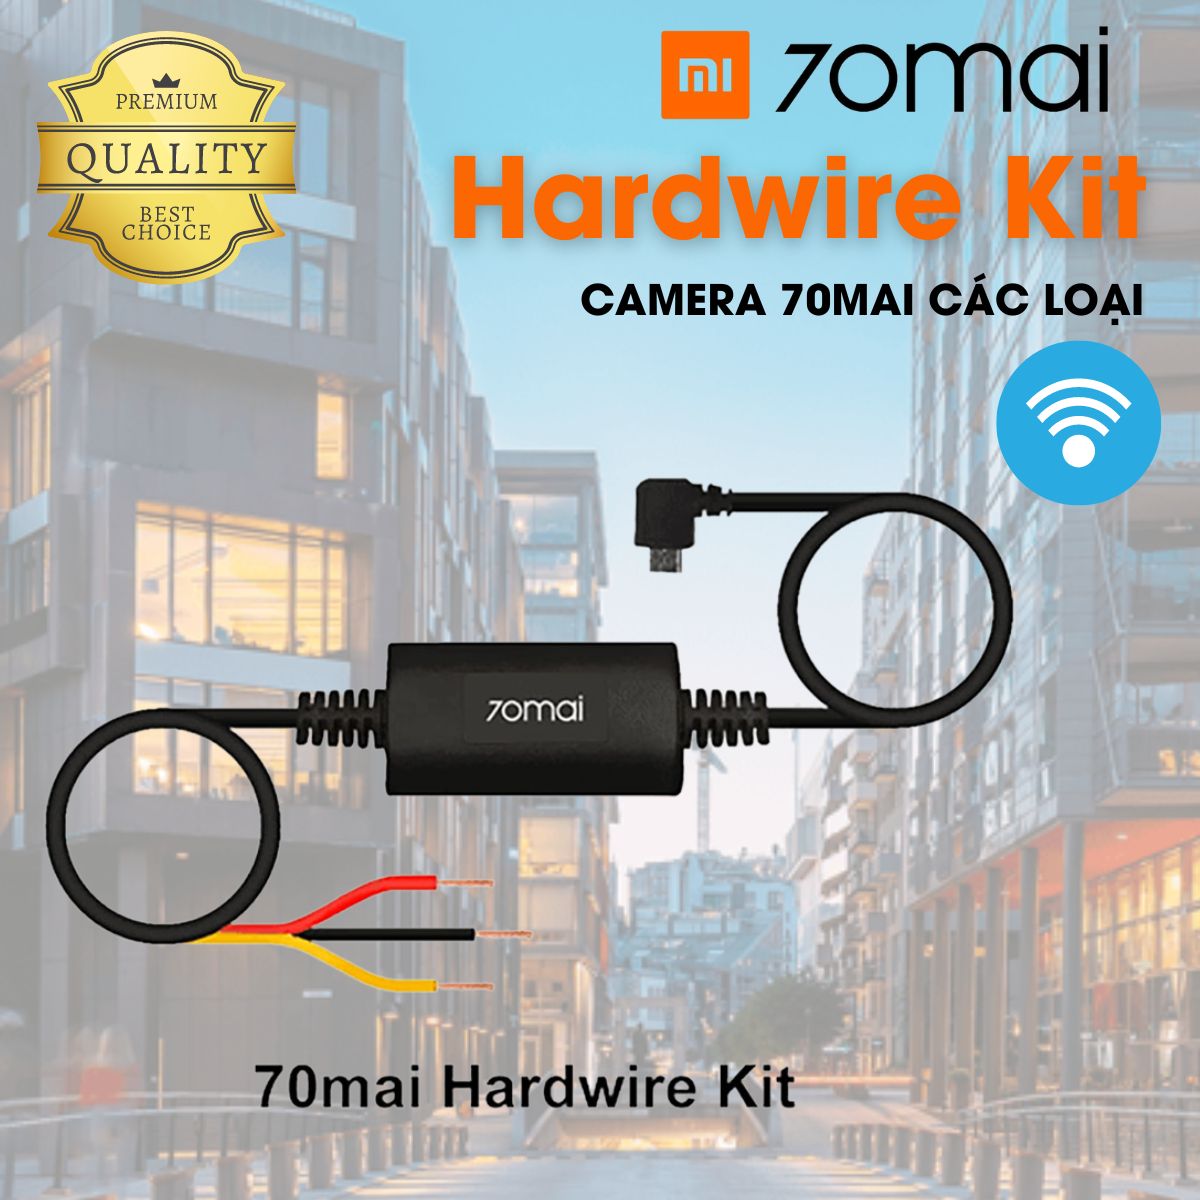 Bộ Kit nguồn Xiaomi 70mai Hardwire Kit đấu điện 24/24 cho camera hành trình 70mai các loại